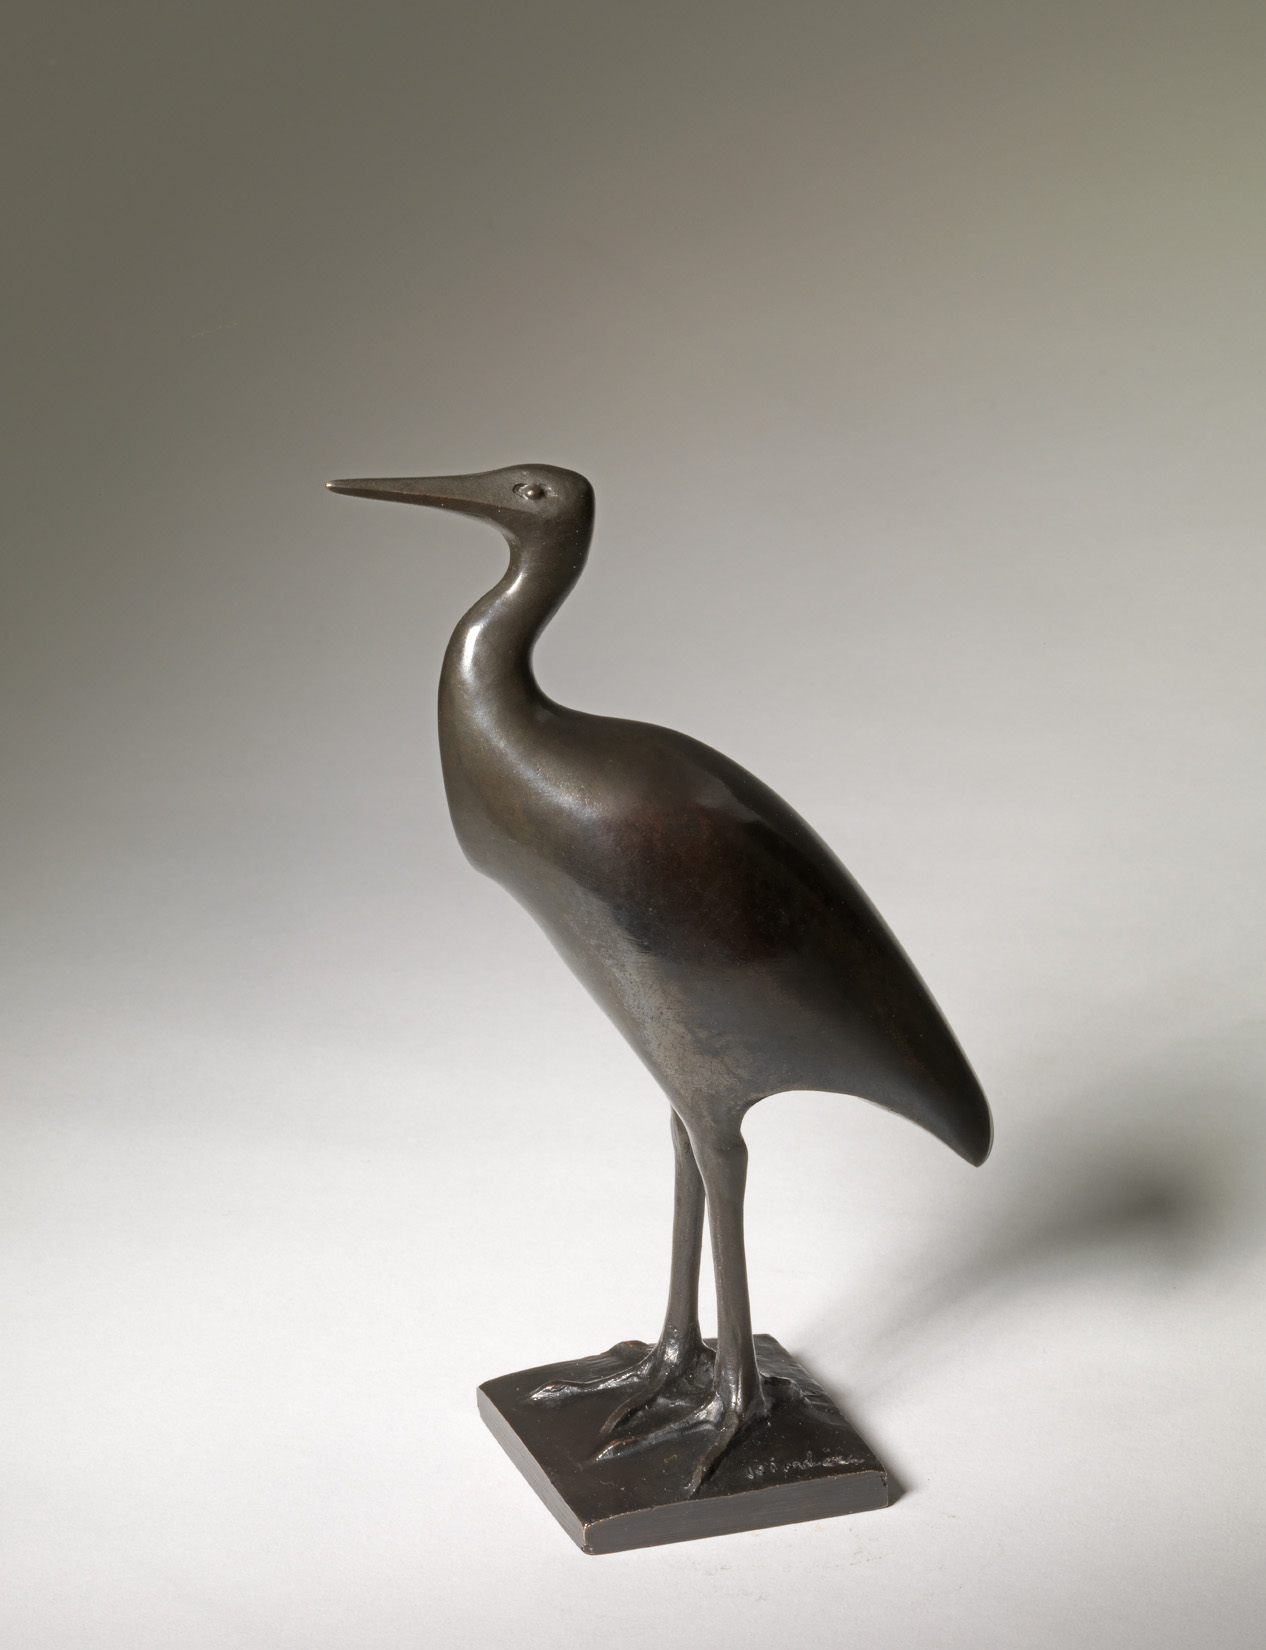 Stork, c. 1927